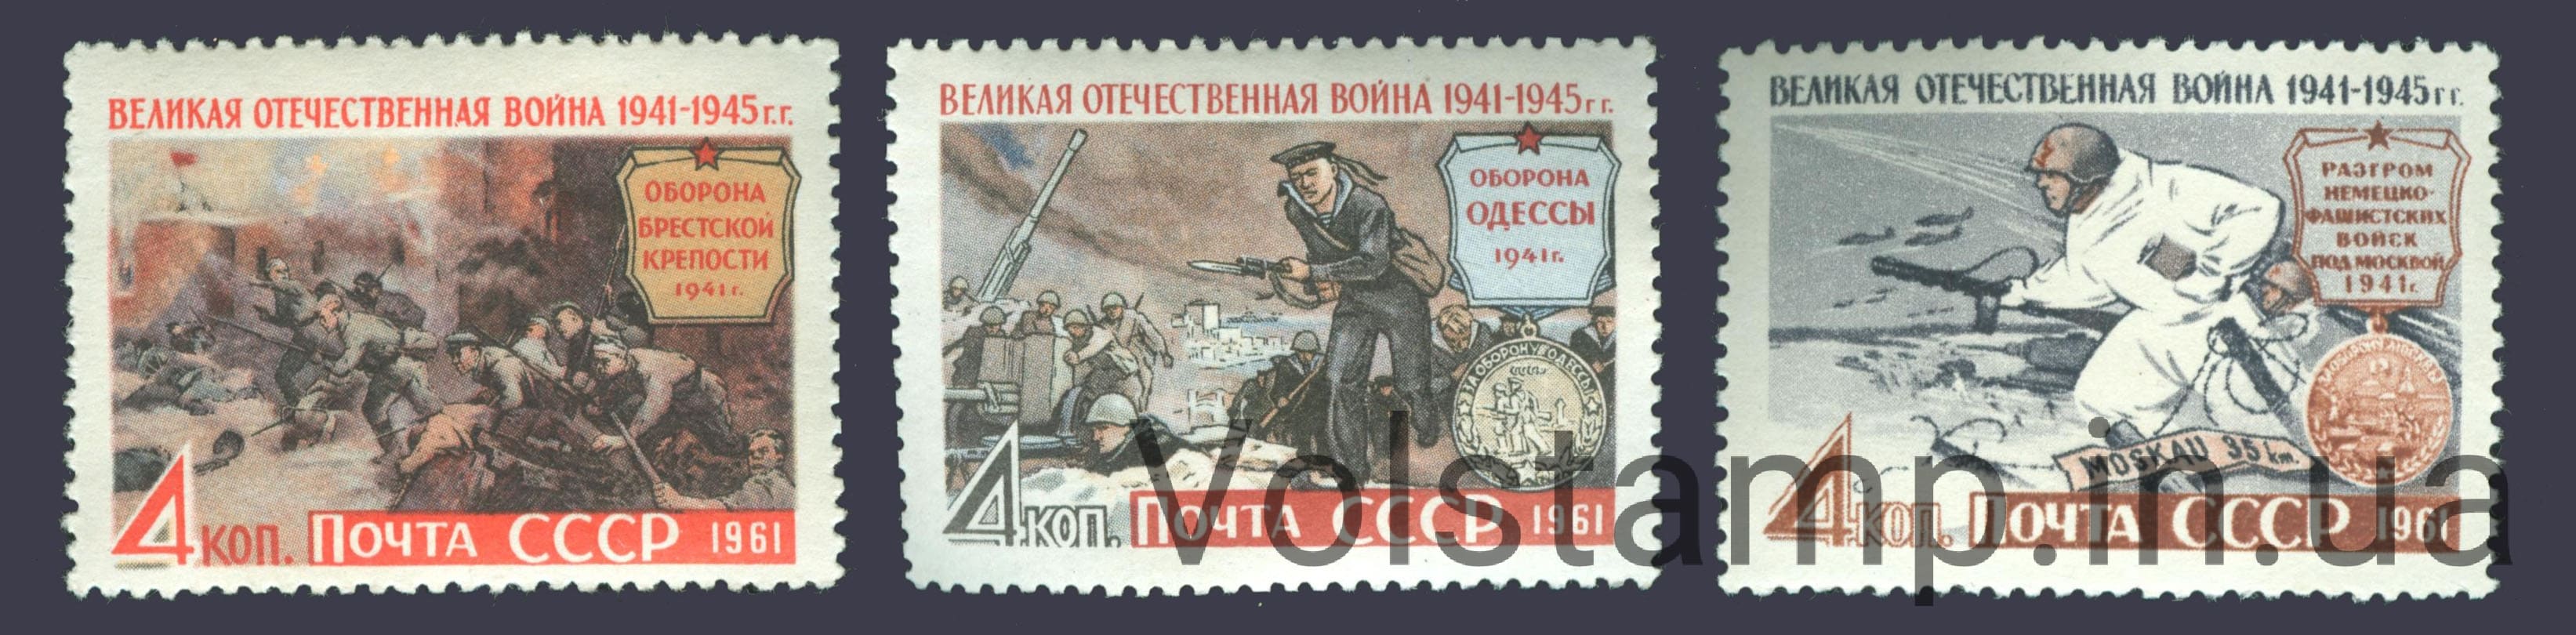 1961 серия марок Великая Отечественная война №2523-2525